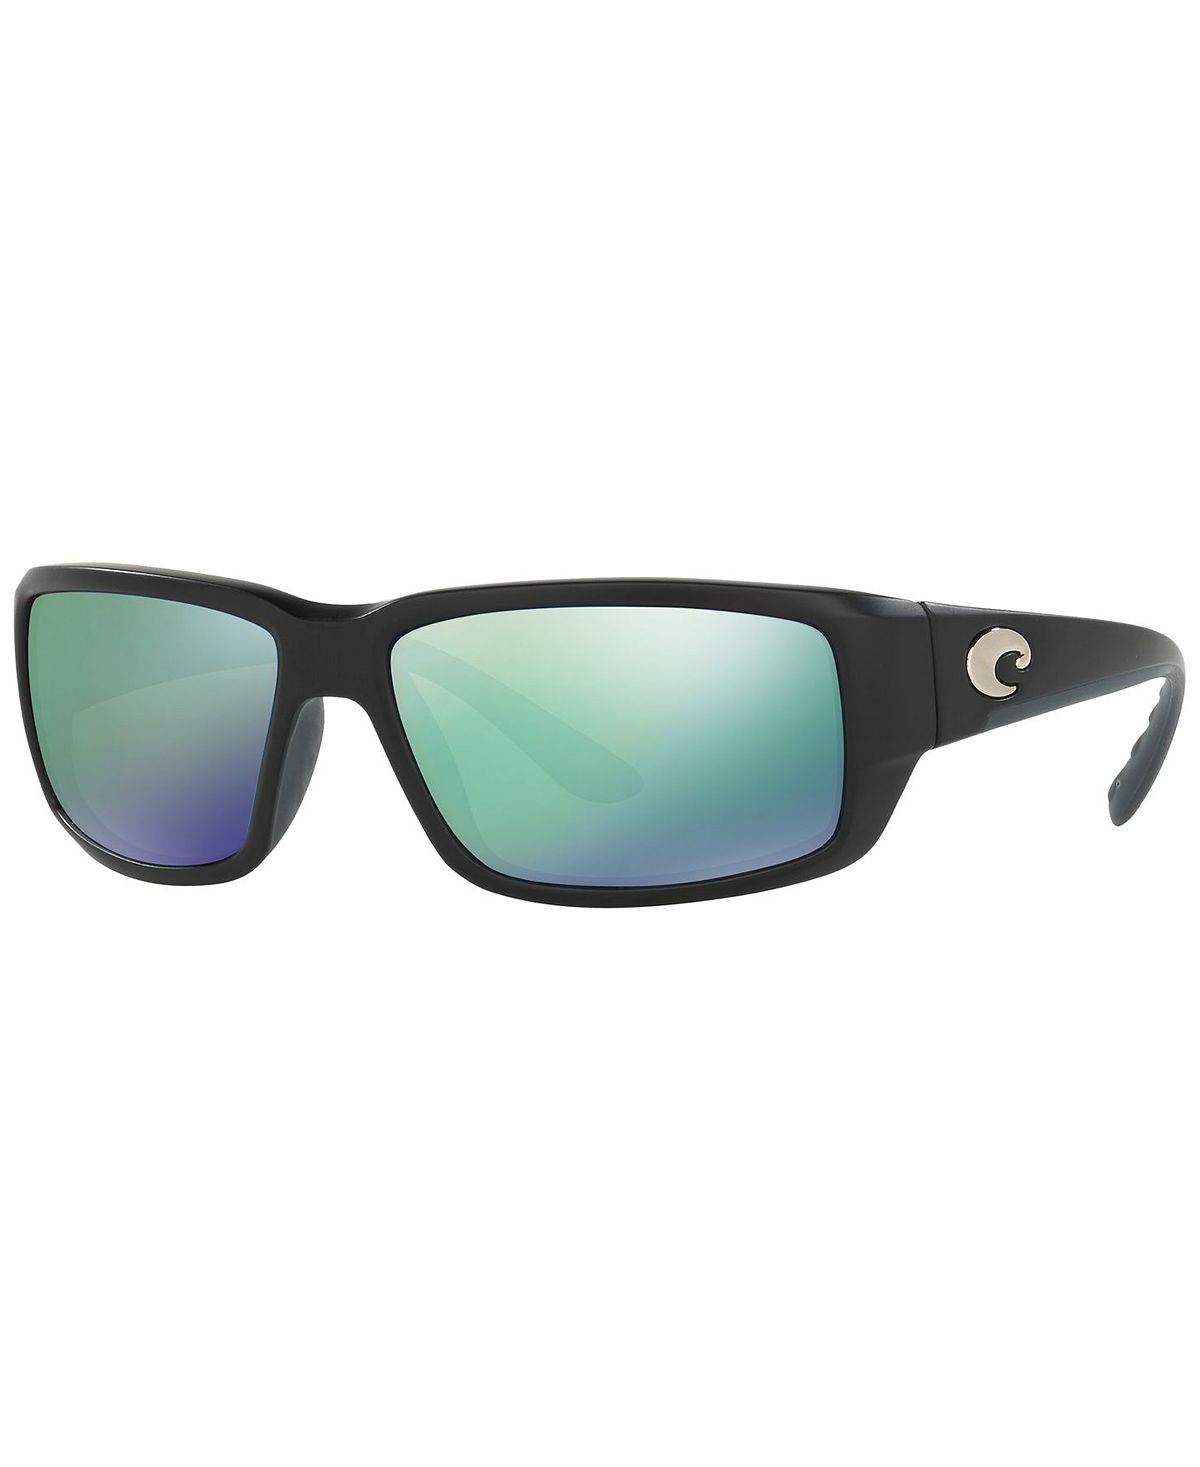 Мужские поляризованные солнцезащитные очки, FANTAIL Costa Del Mar